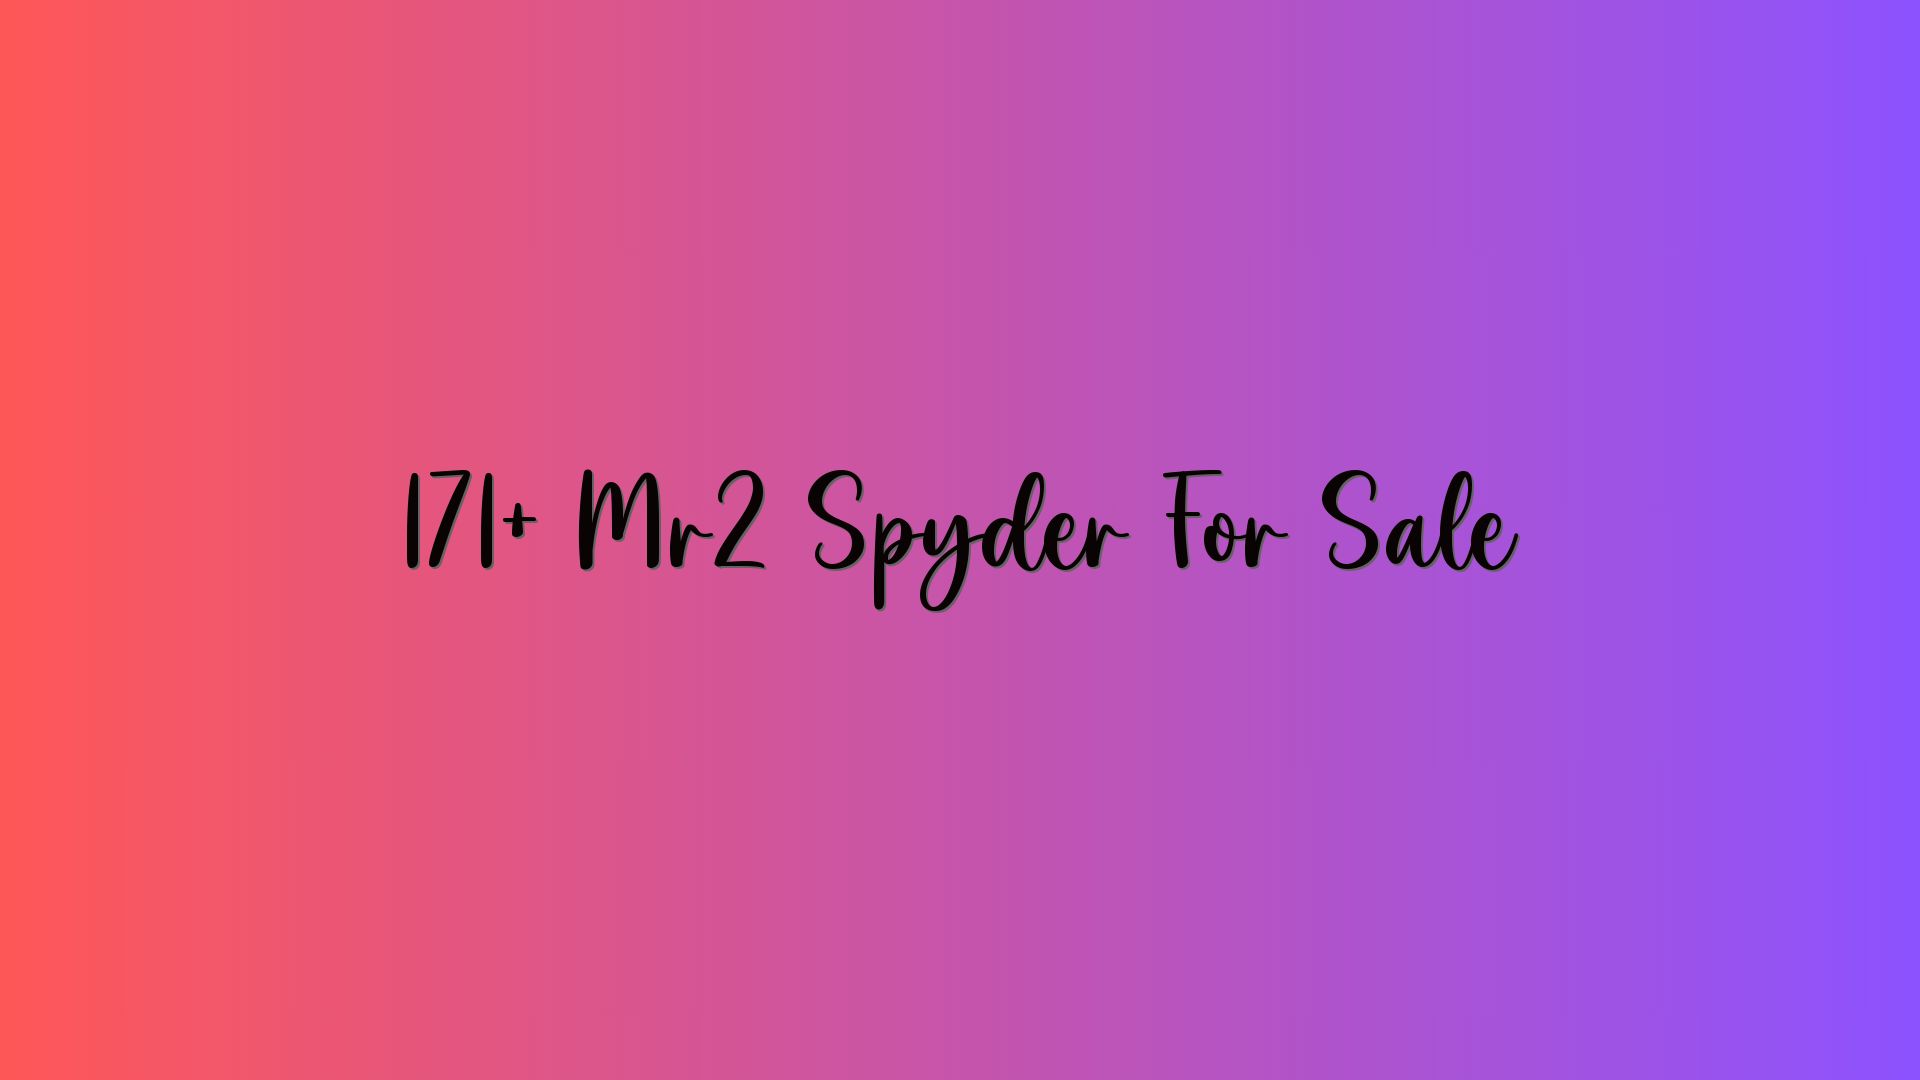 171+ Mr2 Spyder For Sale